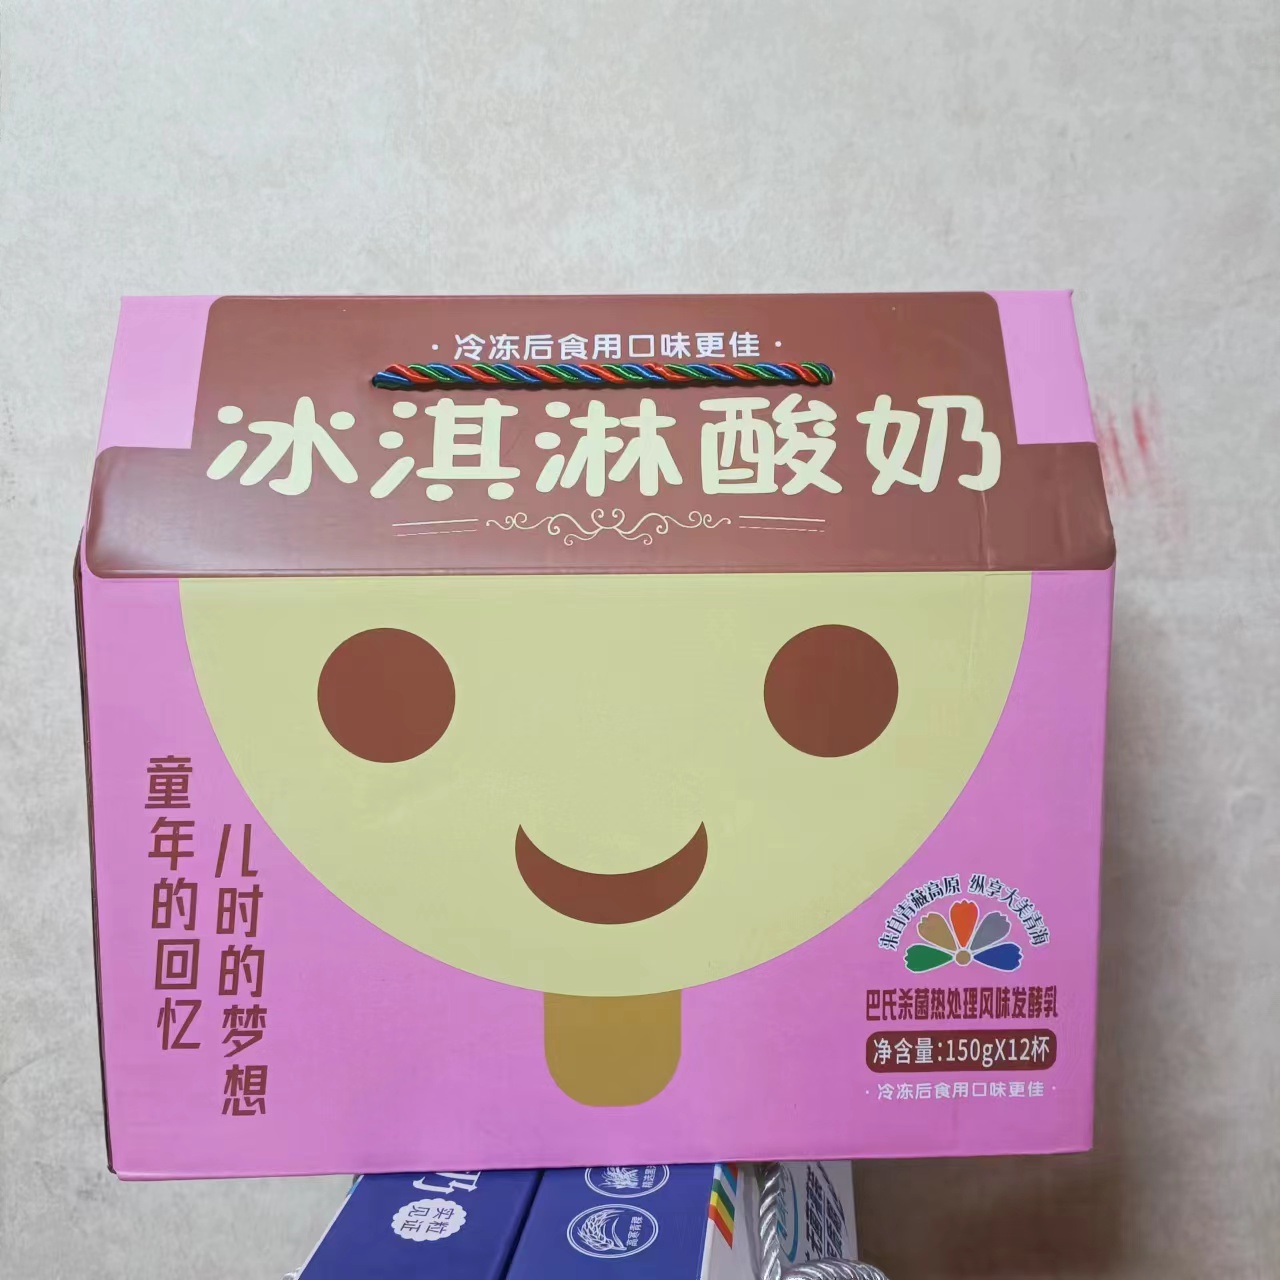 4月产青海特产青藏牧场网红爆款娃娃头冰激凌酸奶150g12杯包邮